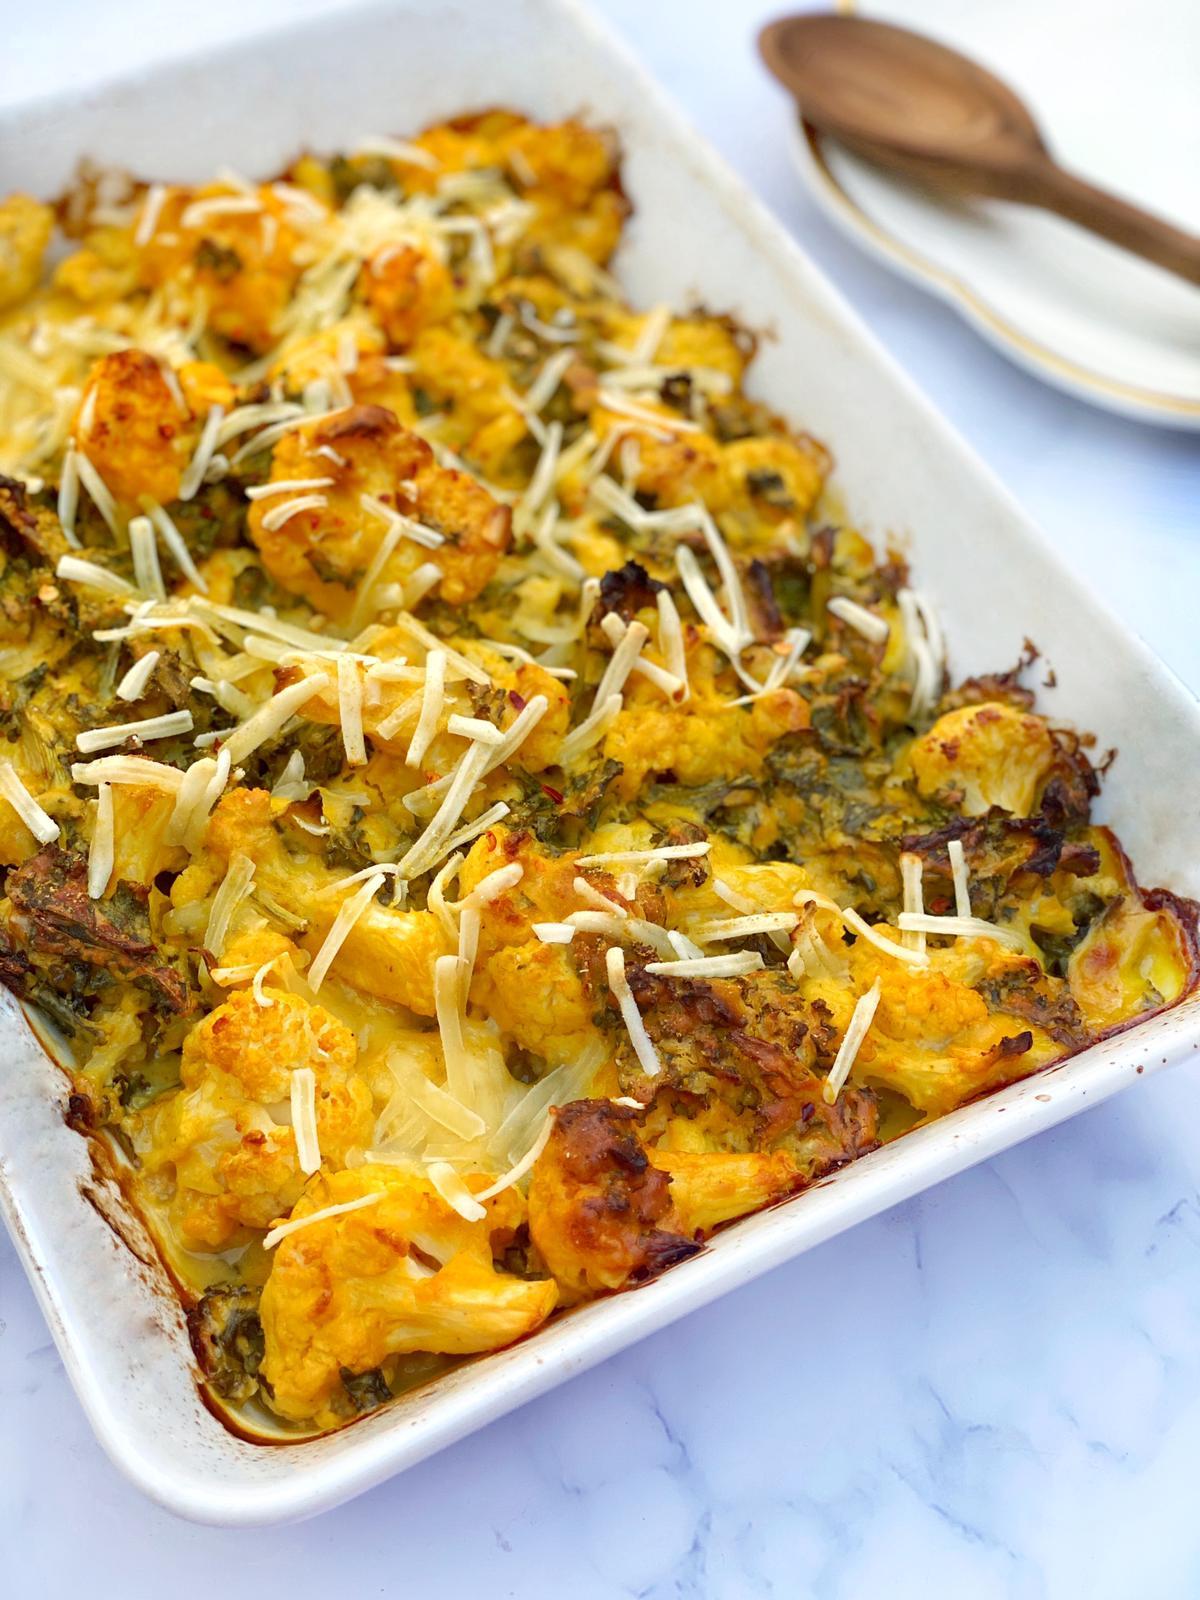 Vegan Cheesy Cauliflower & Kale Bake by Natalya Fisher|@littleleafkitchen